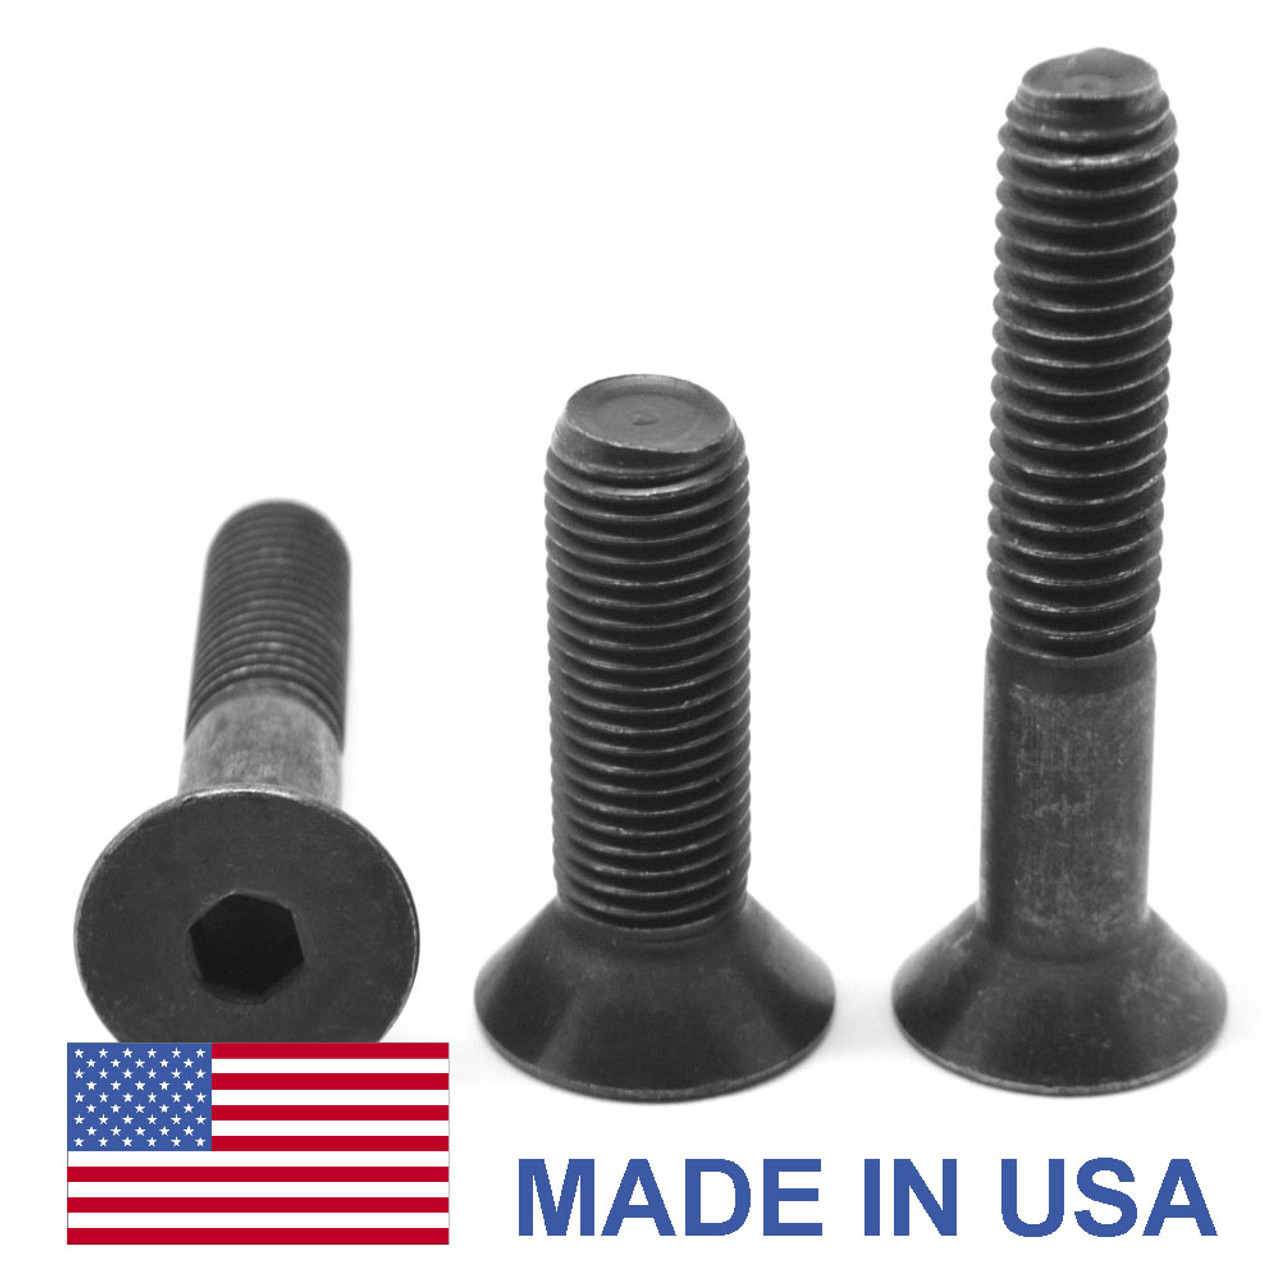 M6 x 1.00 x 30 MM Coarse Thread Socket Flat Head Cap Screw - USA Alloy Steel Thermal Black Oxide